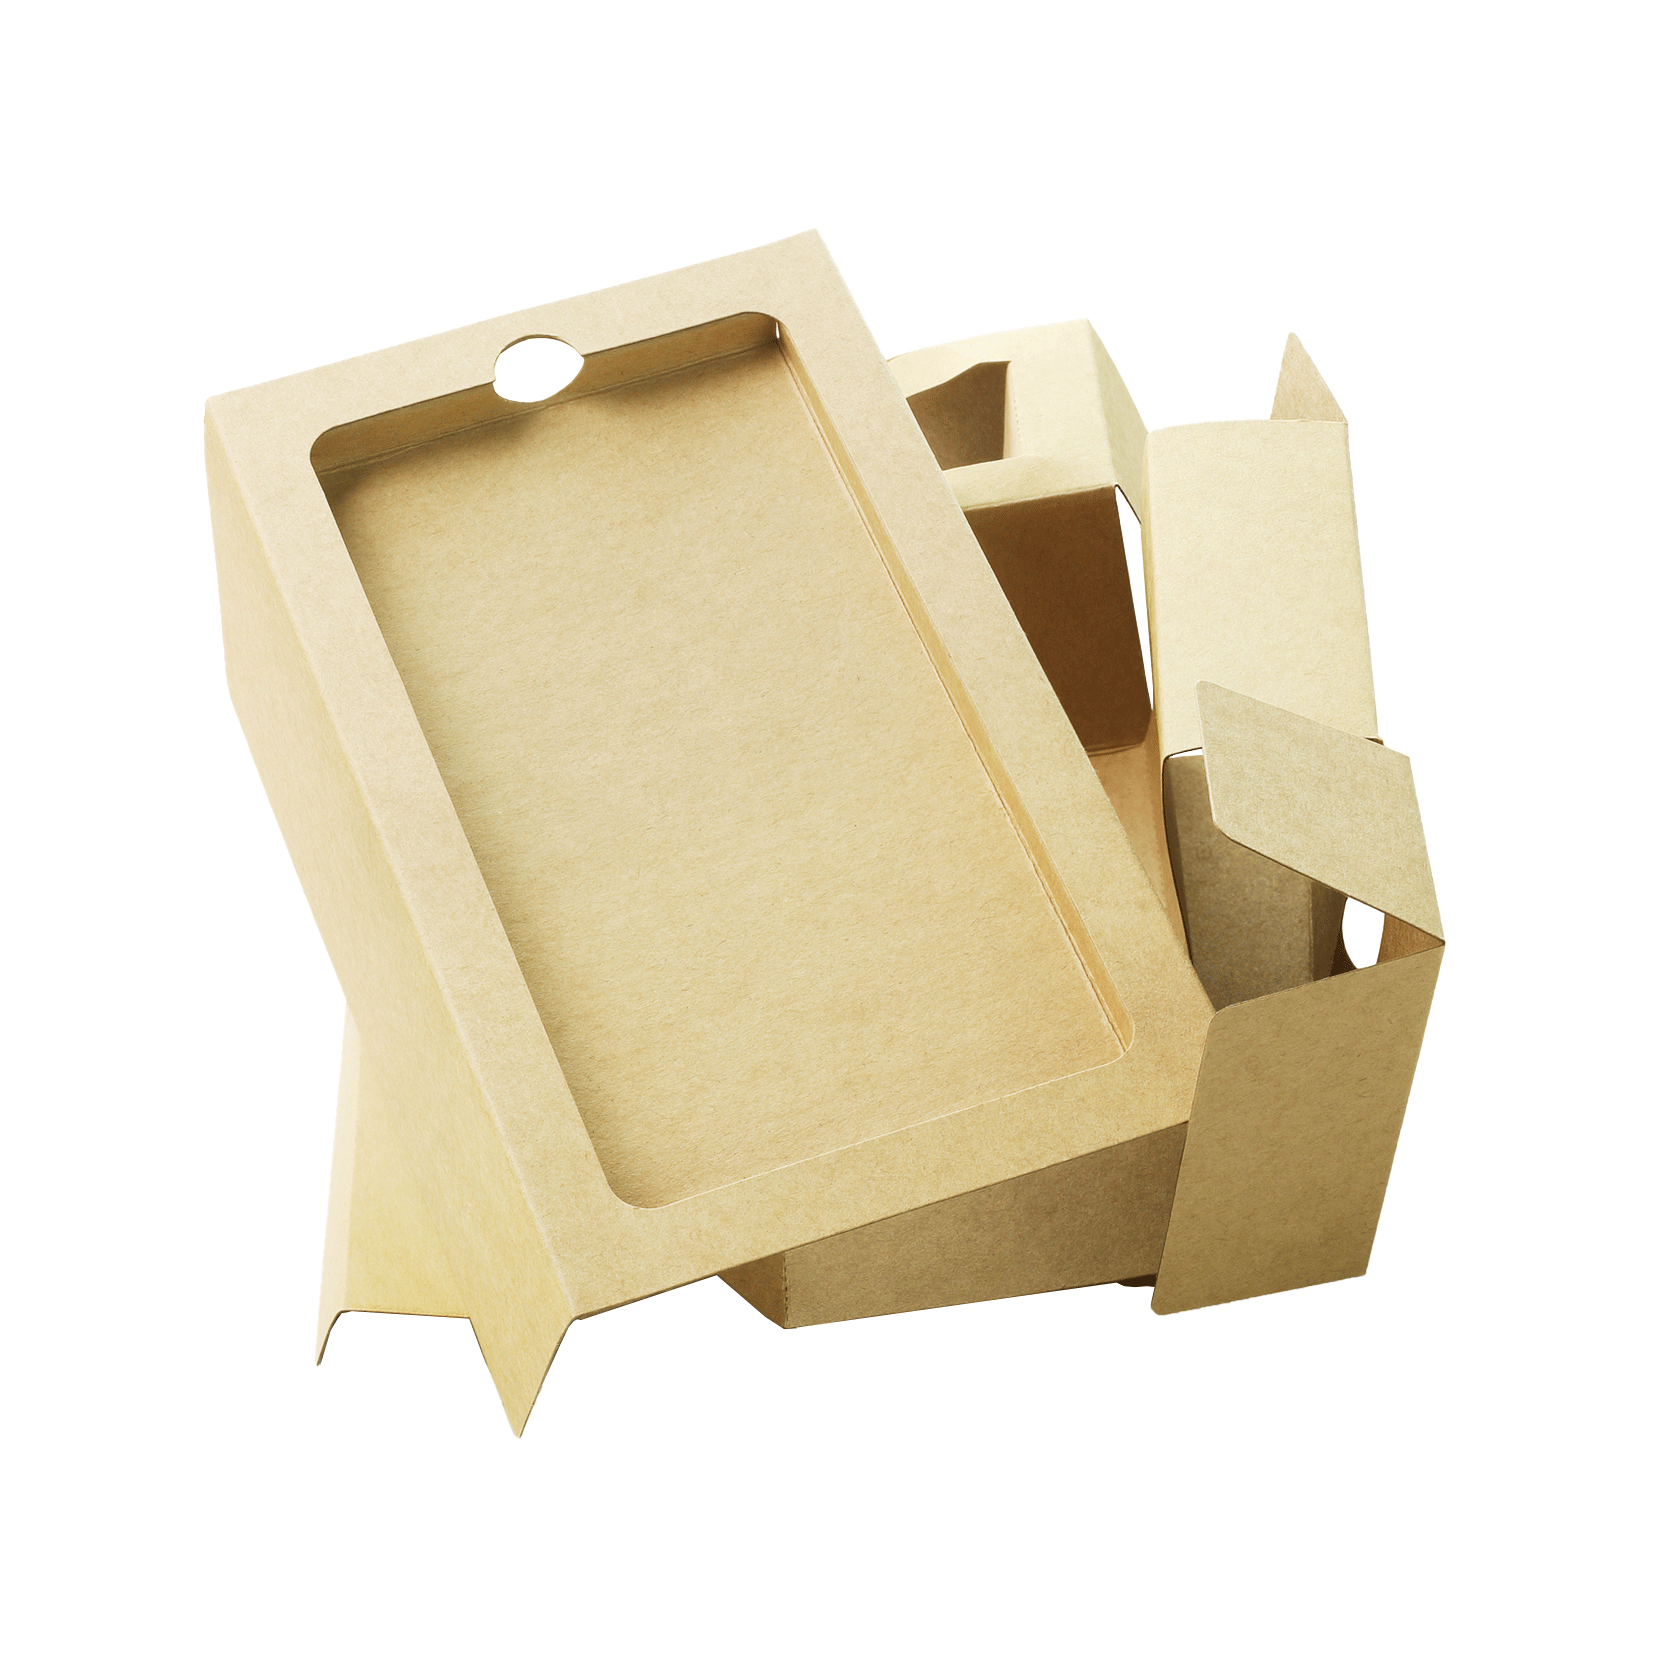 Производство упаковки. Купить упаковку, картонные коробки | Комупак .